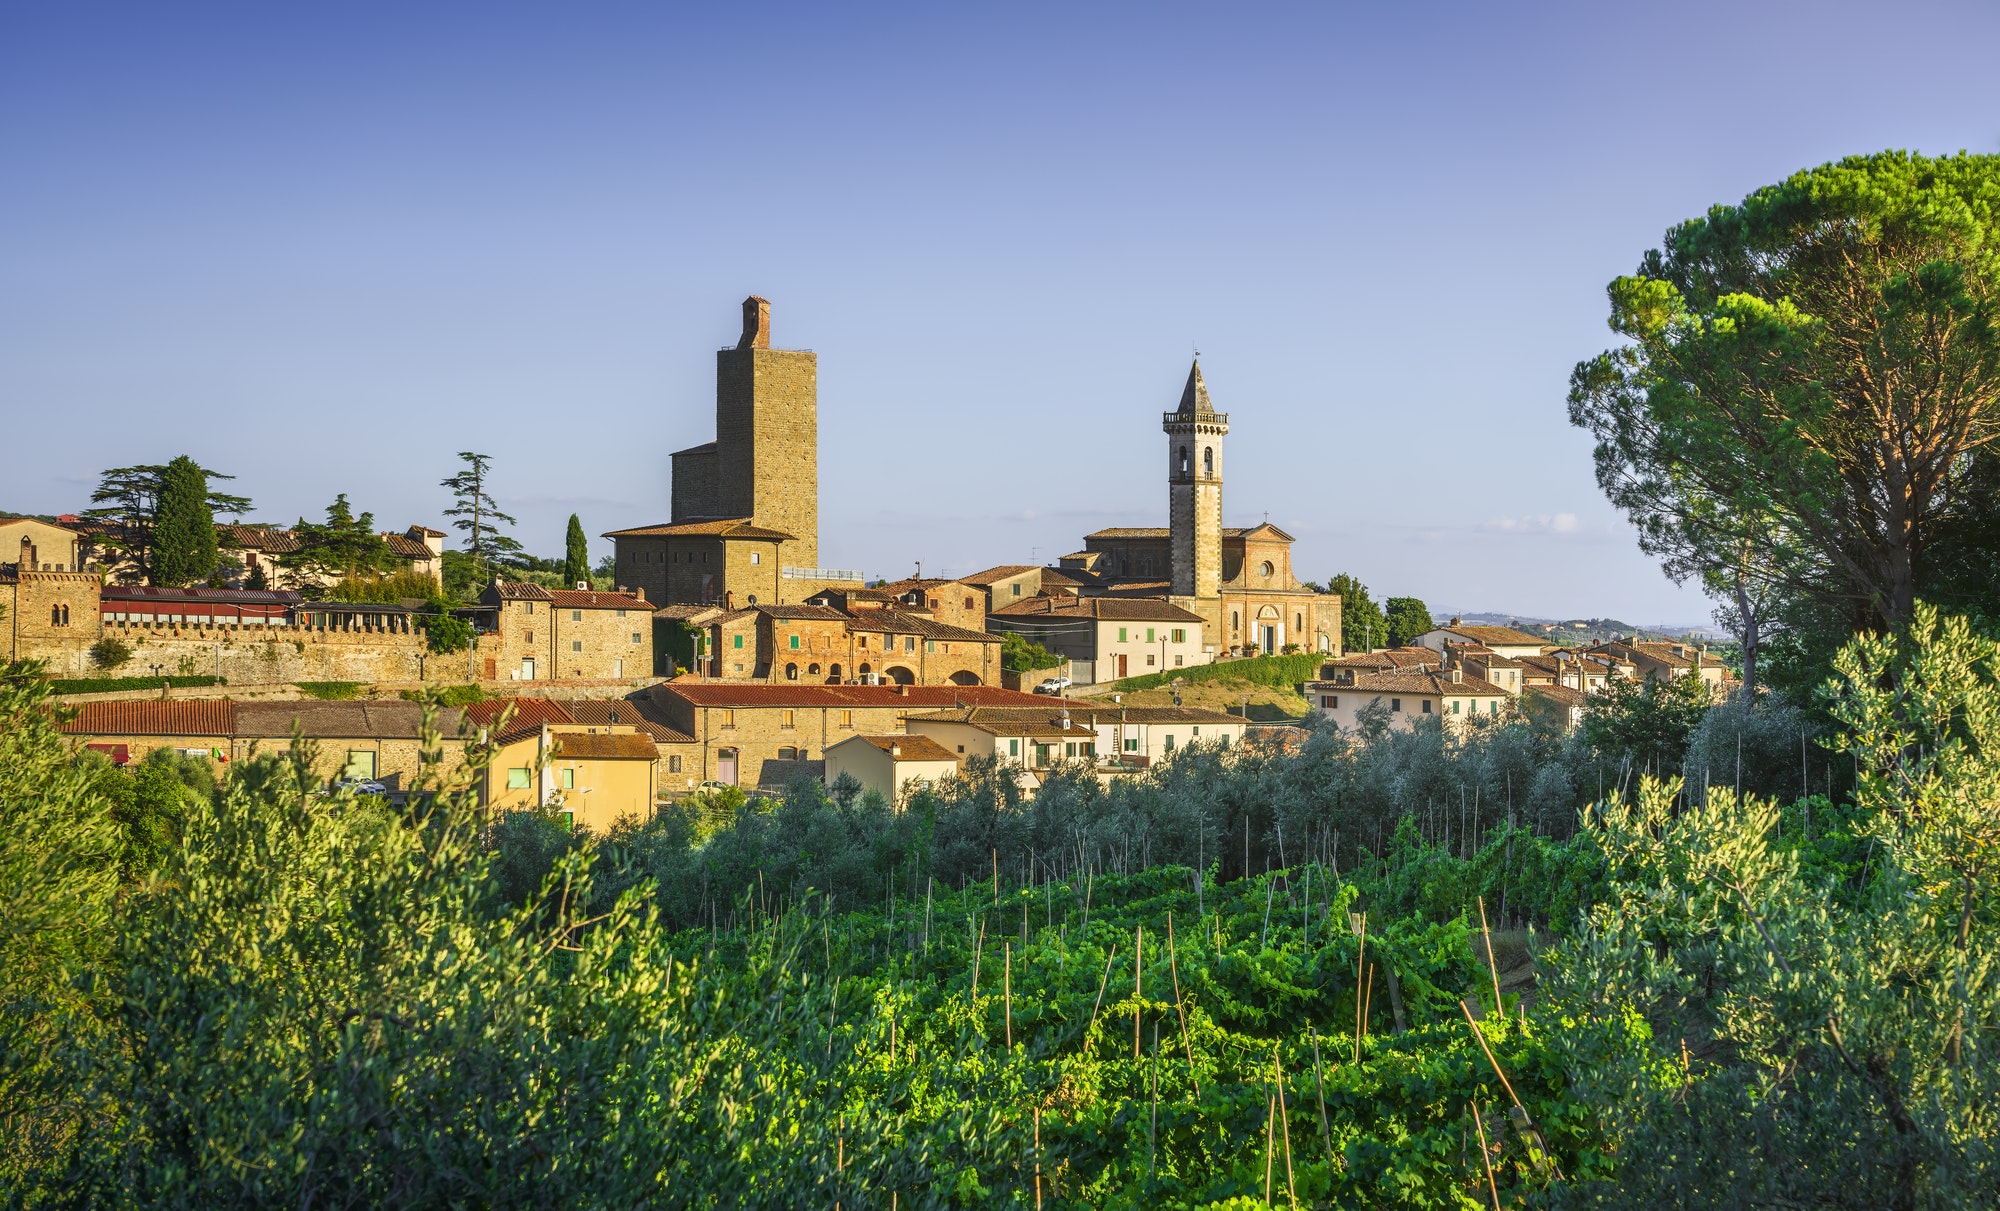 Vinci, Leonardo birthplace, village skyline, vineyards and olive trees. Florence, Tuscany Italy